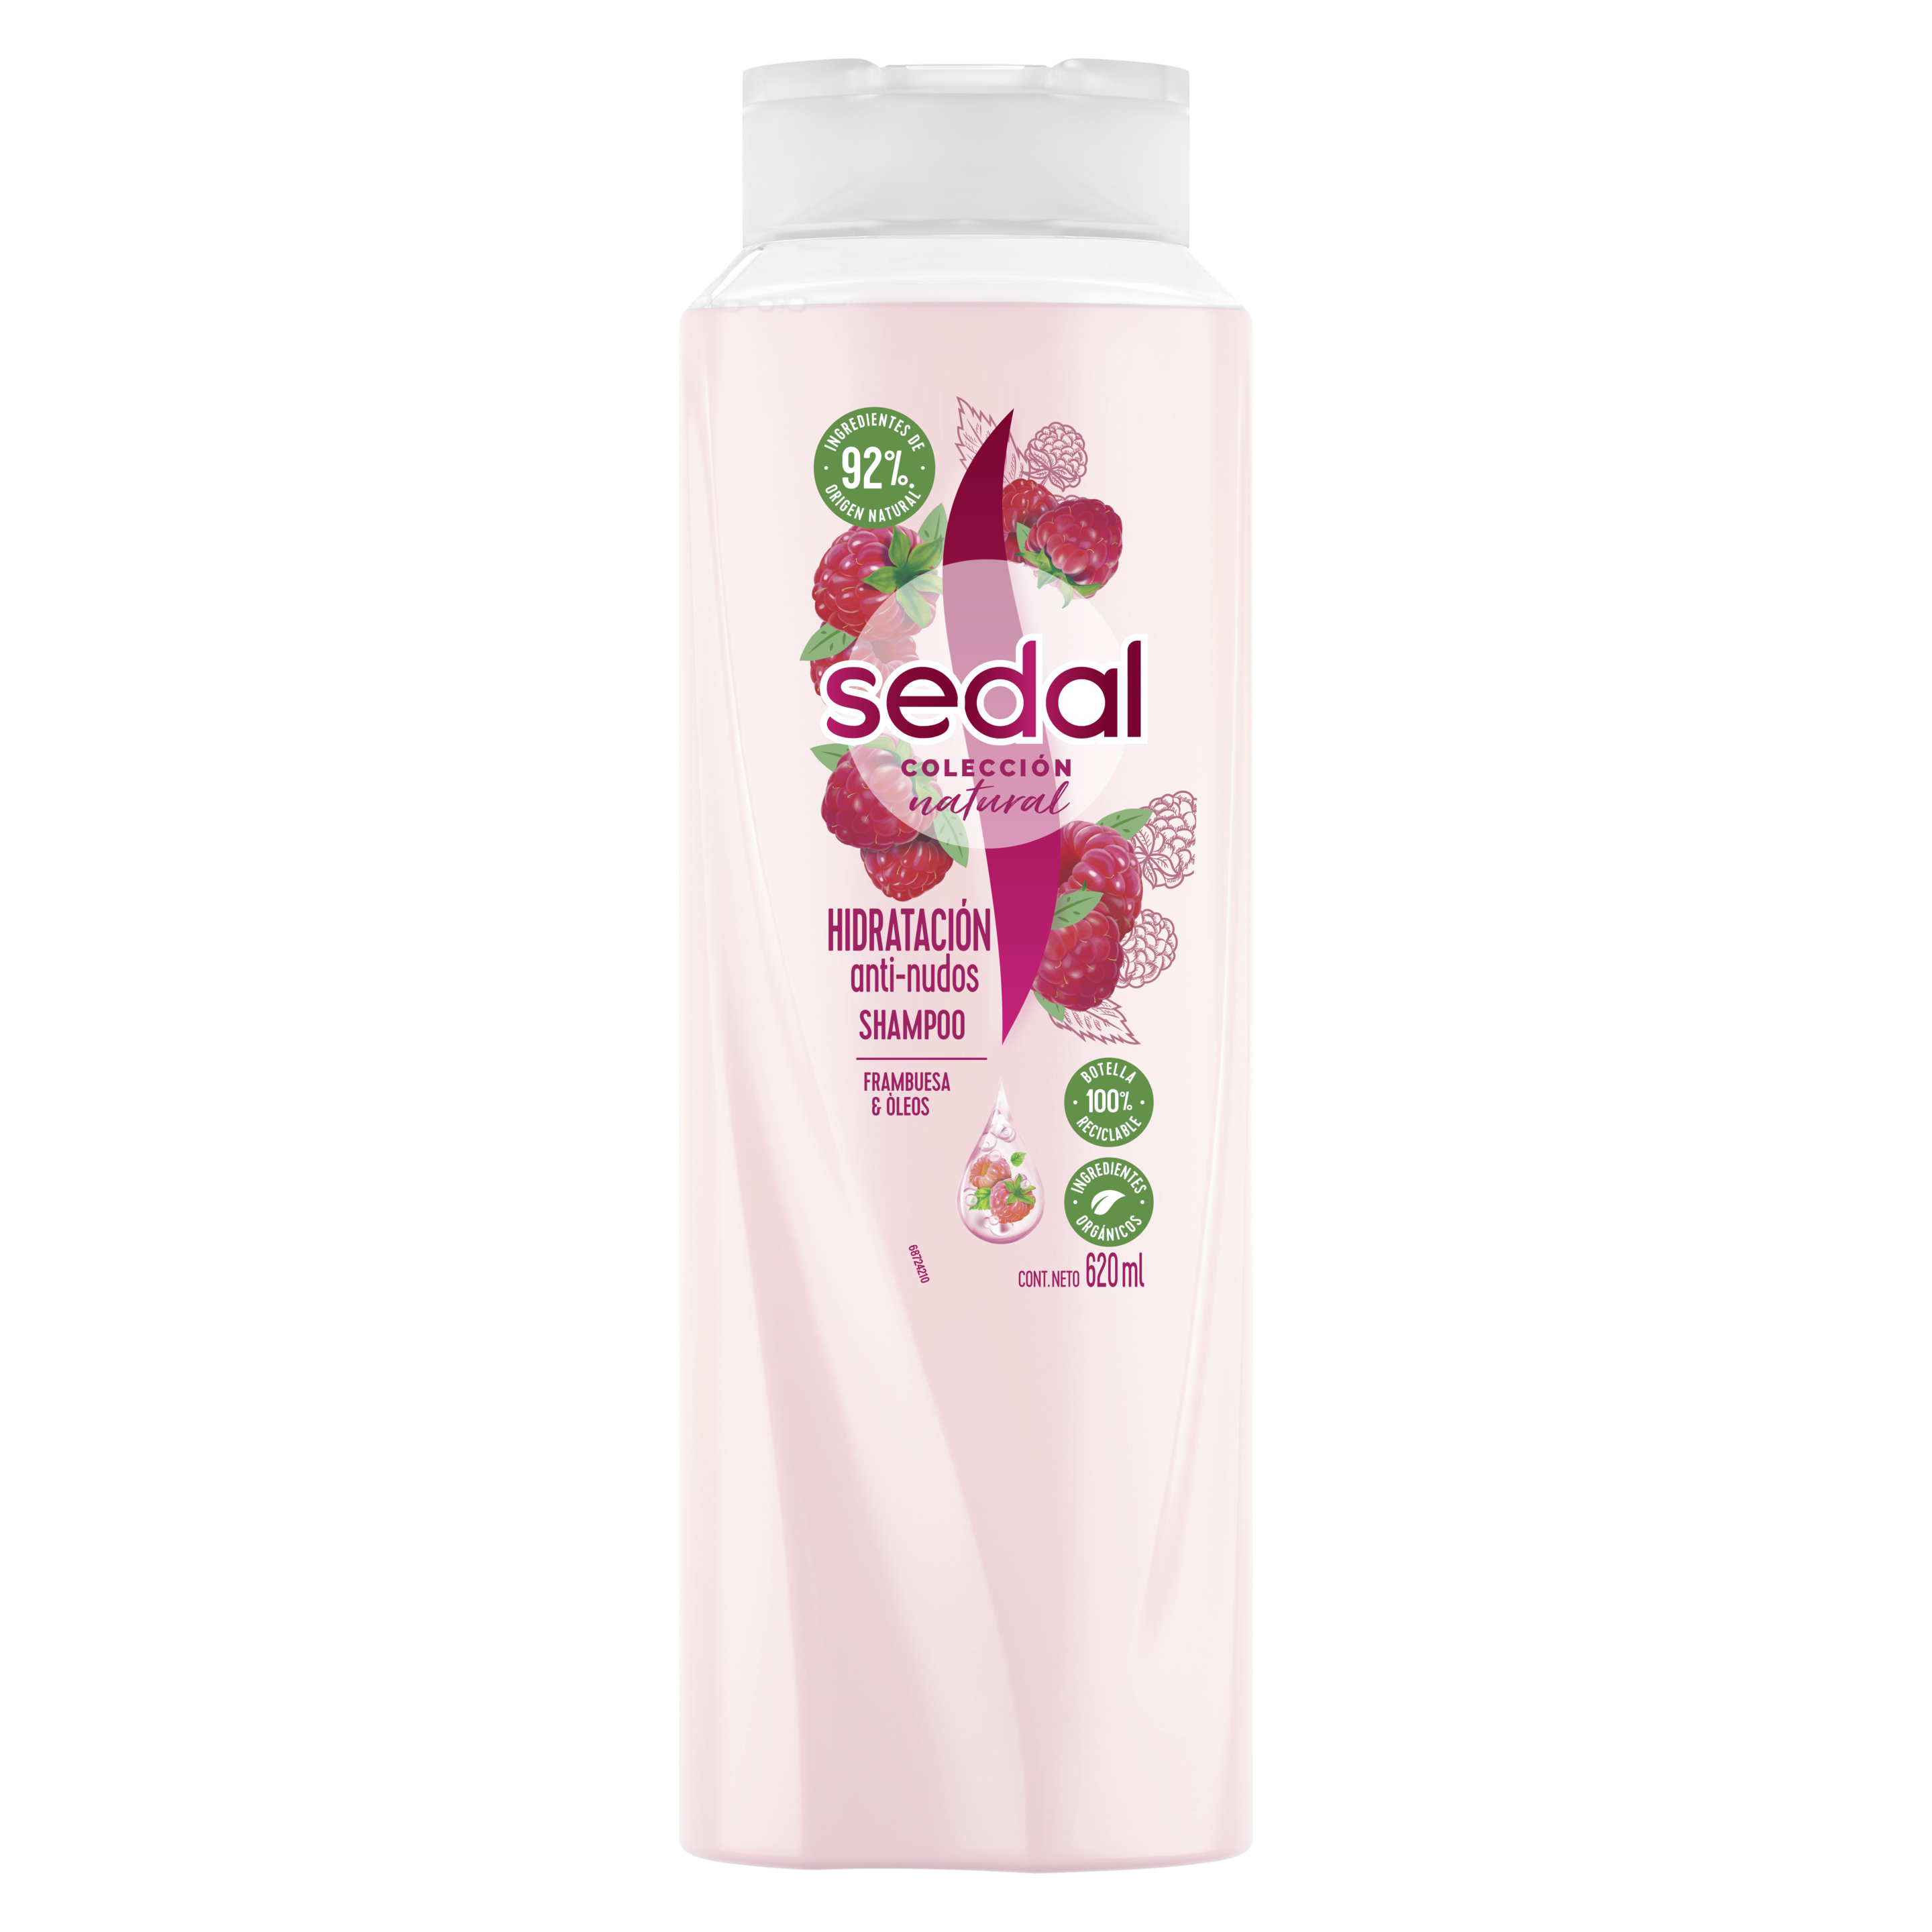 Imagen al frente del paquete Shampoo Sedal Hidratación Anti-Nudos Frambuesa y Óleos  620 ml